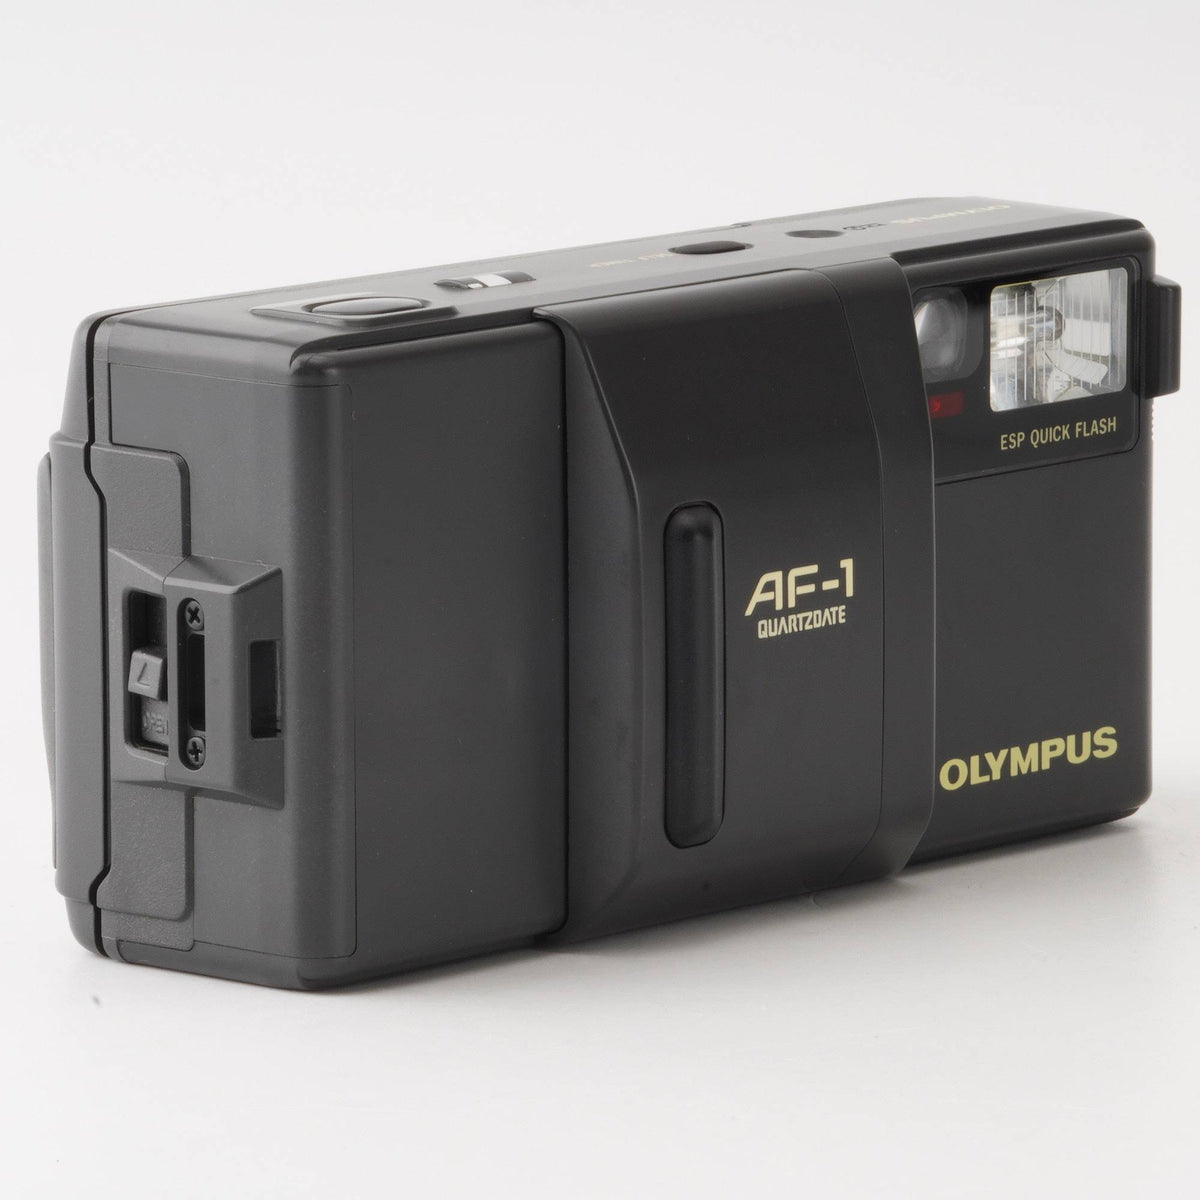 オリンパス Olympus AF-1 QUARTZ DATE / ZUIKO 35mm F2.8